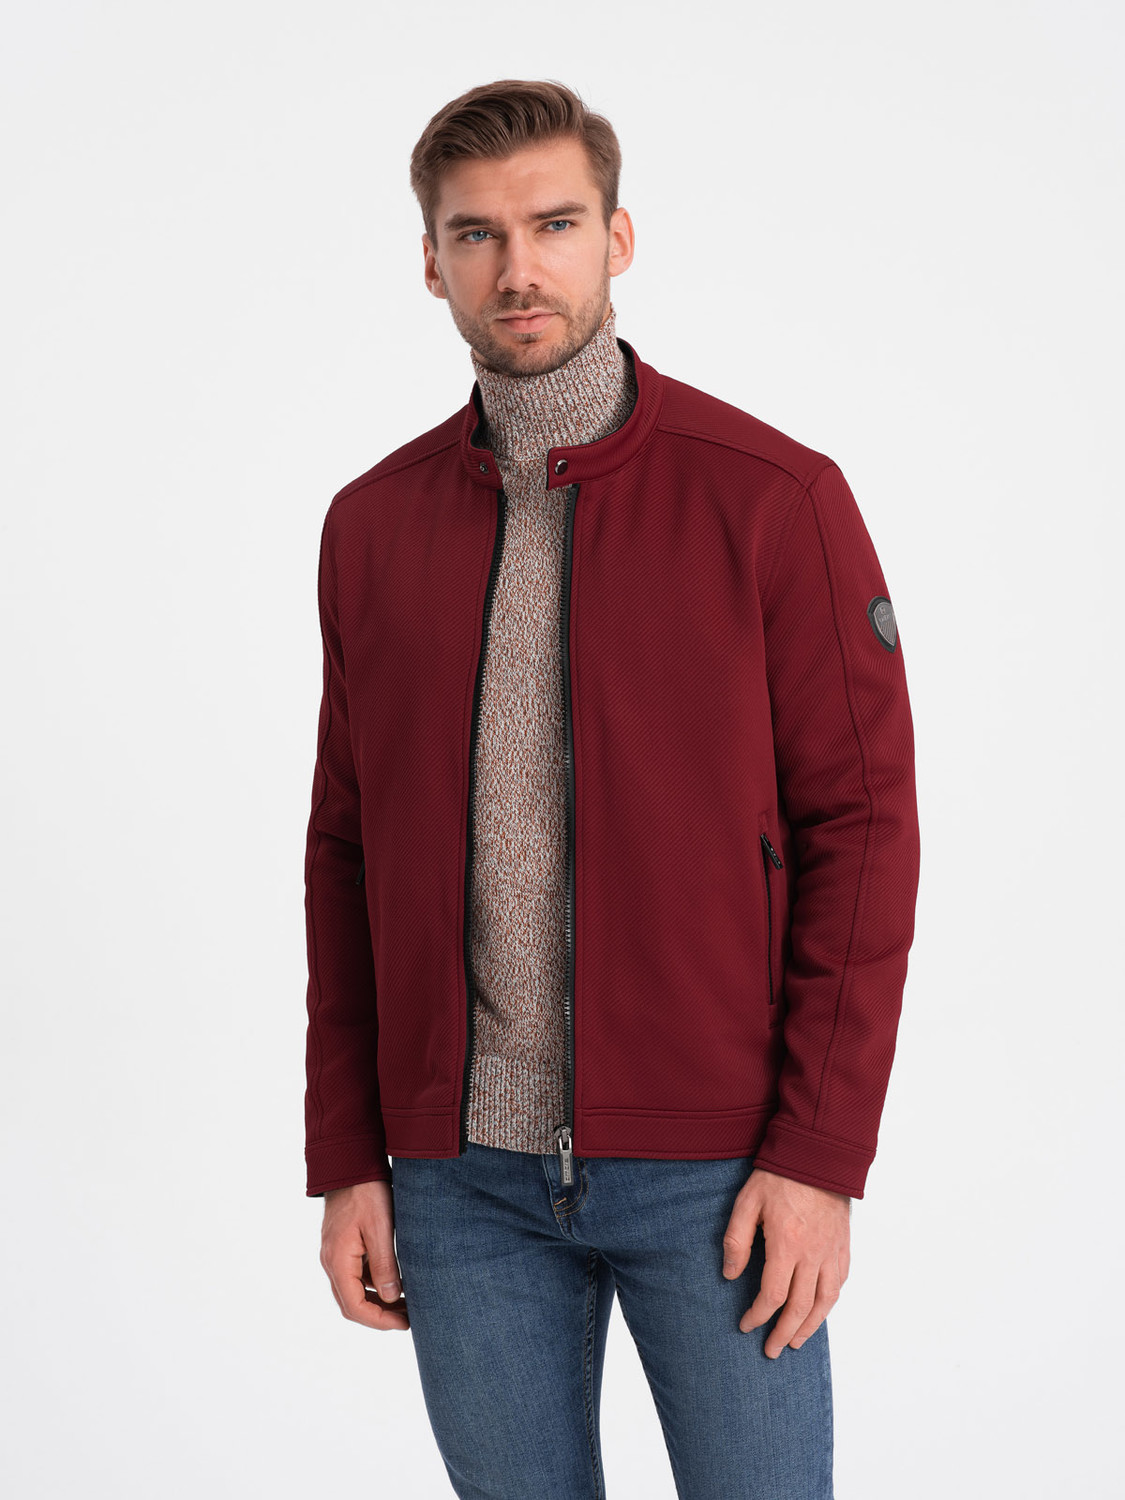 Men's BIKER jacket in structured fabric - maroon V2 OM-JANP V2 OM-JANP - 0138